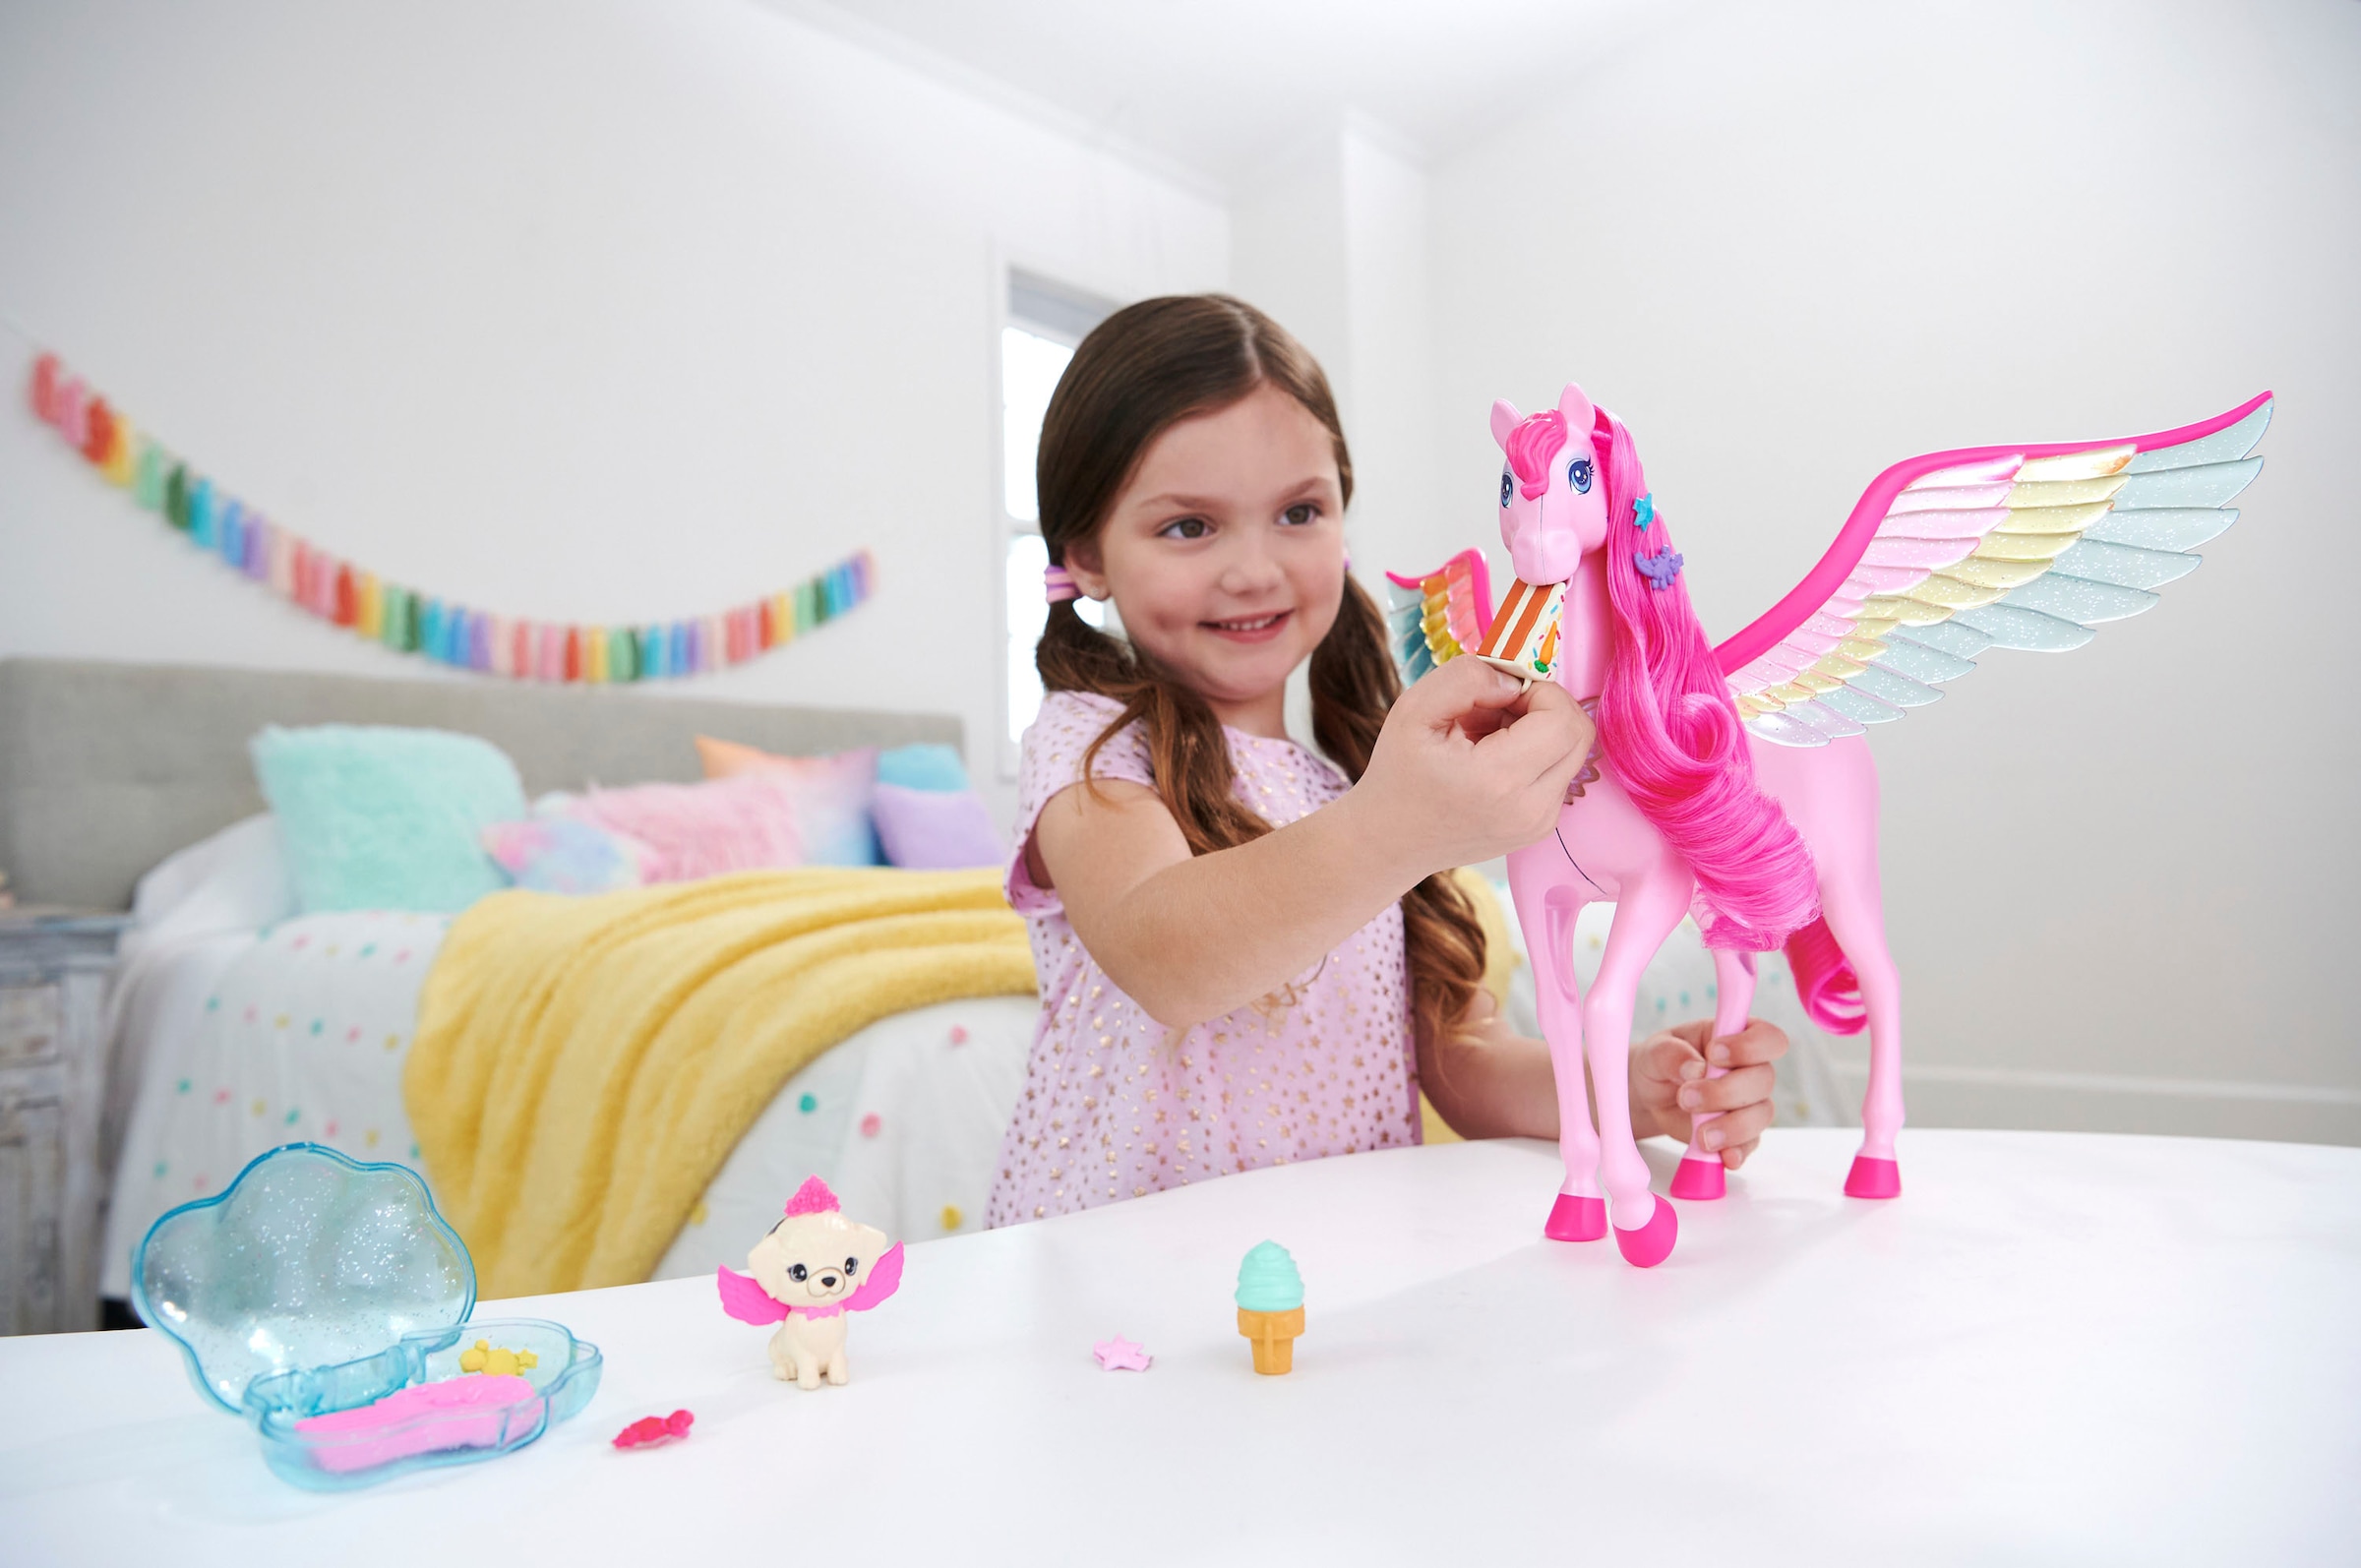 Barbie Anziehpuppe »Ein verborgener Zauber, Rosafarbener Pegasus mit Hündchen«